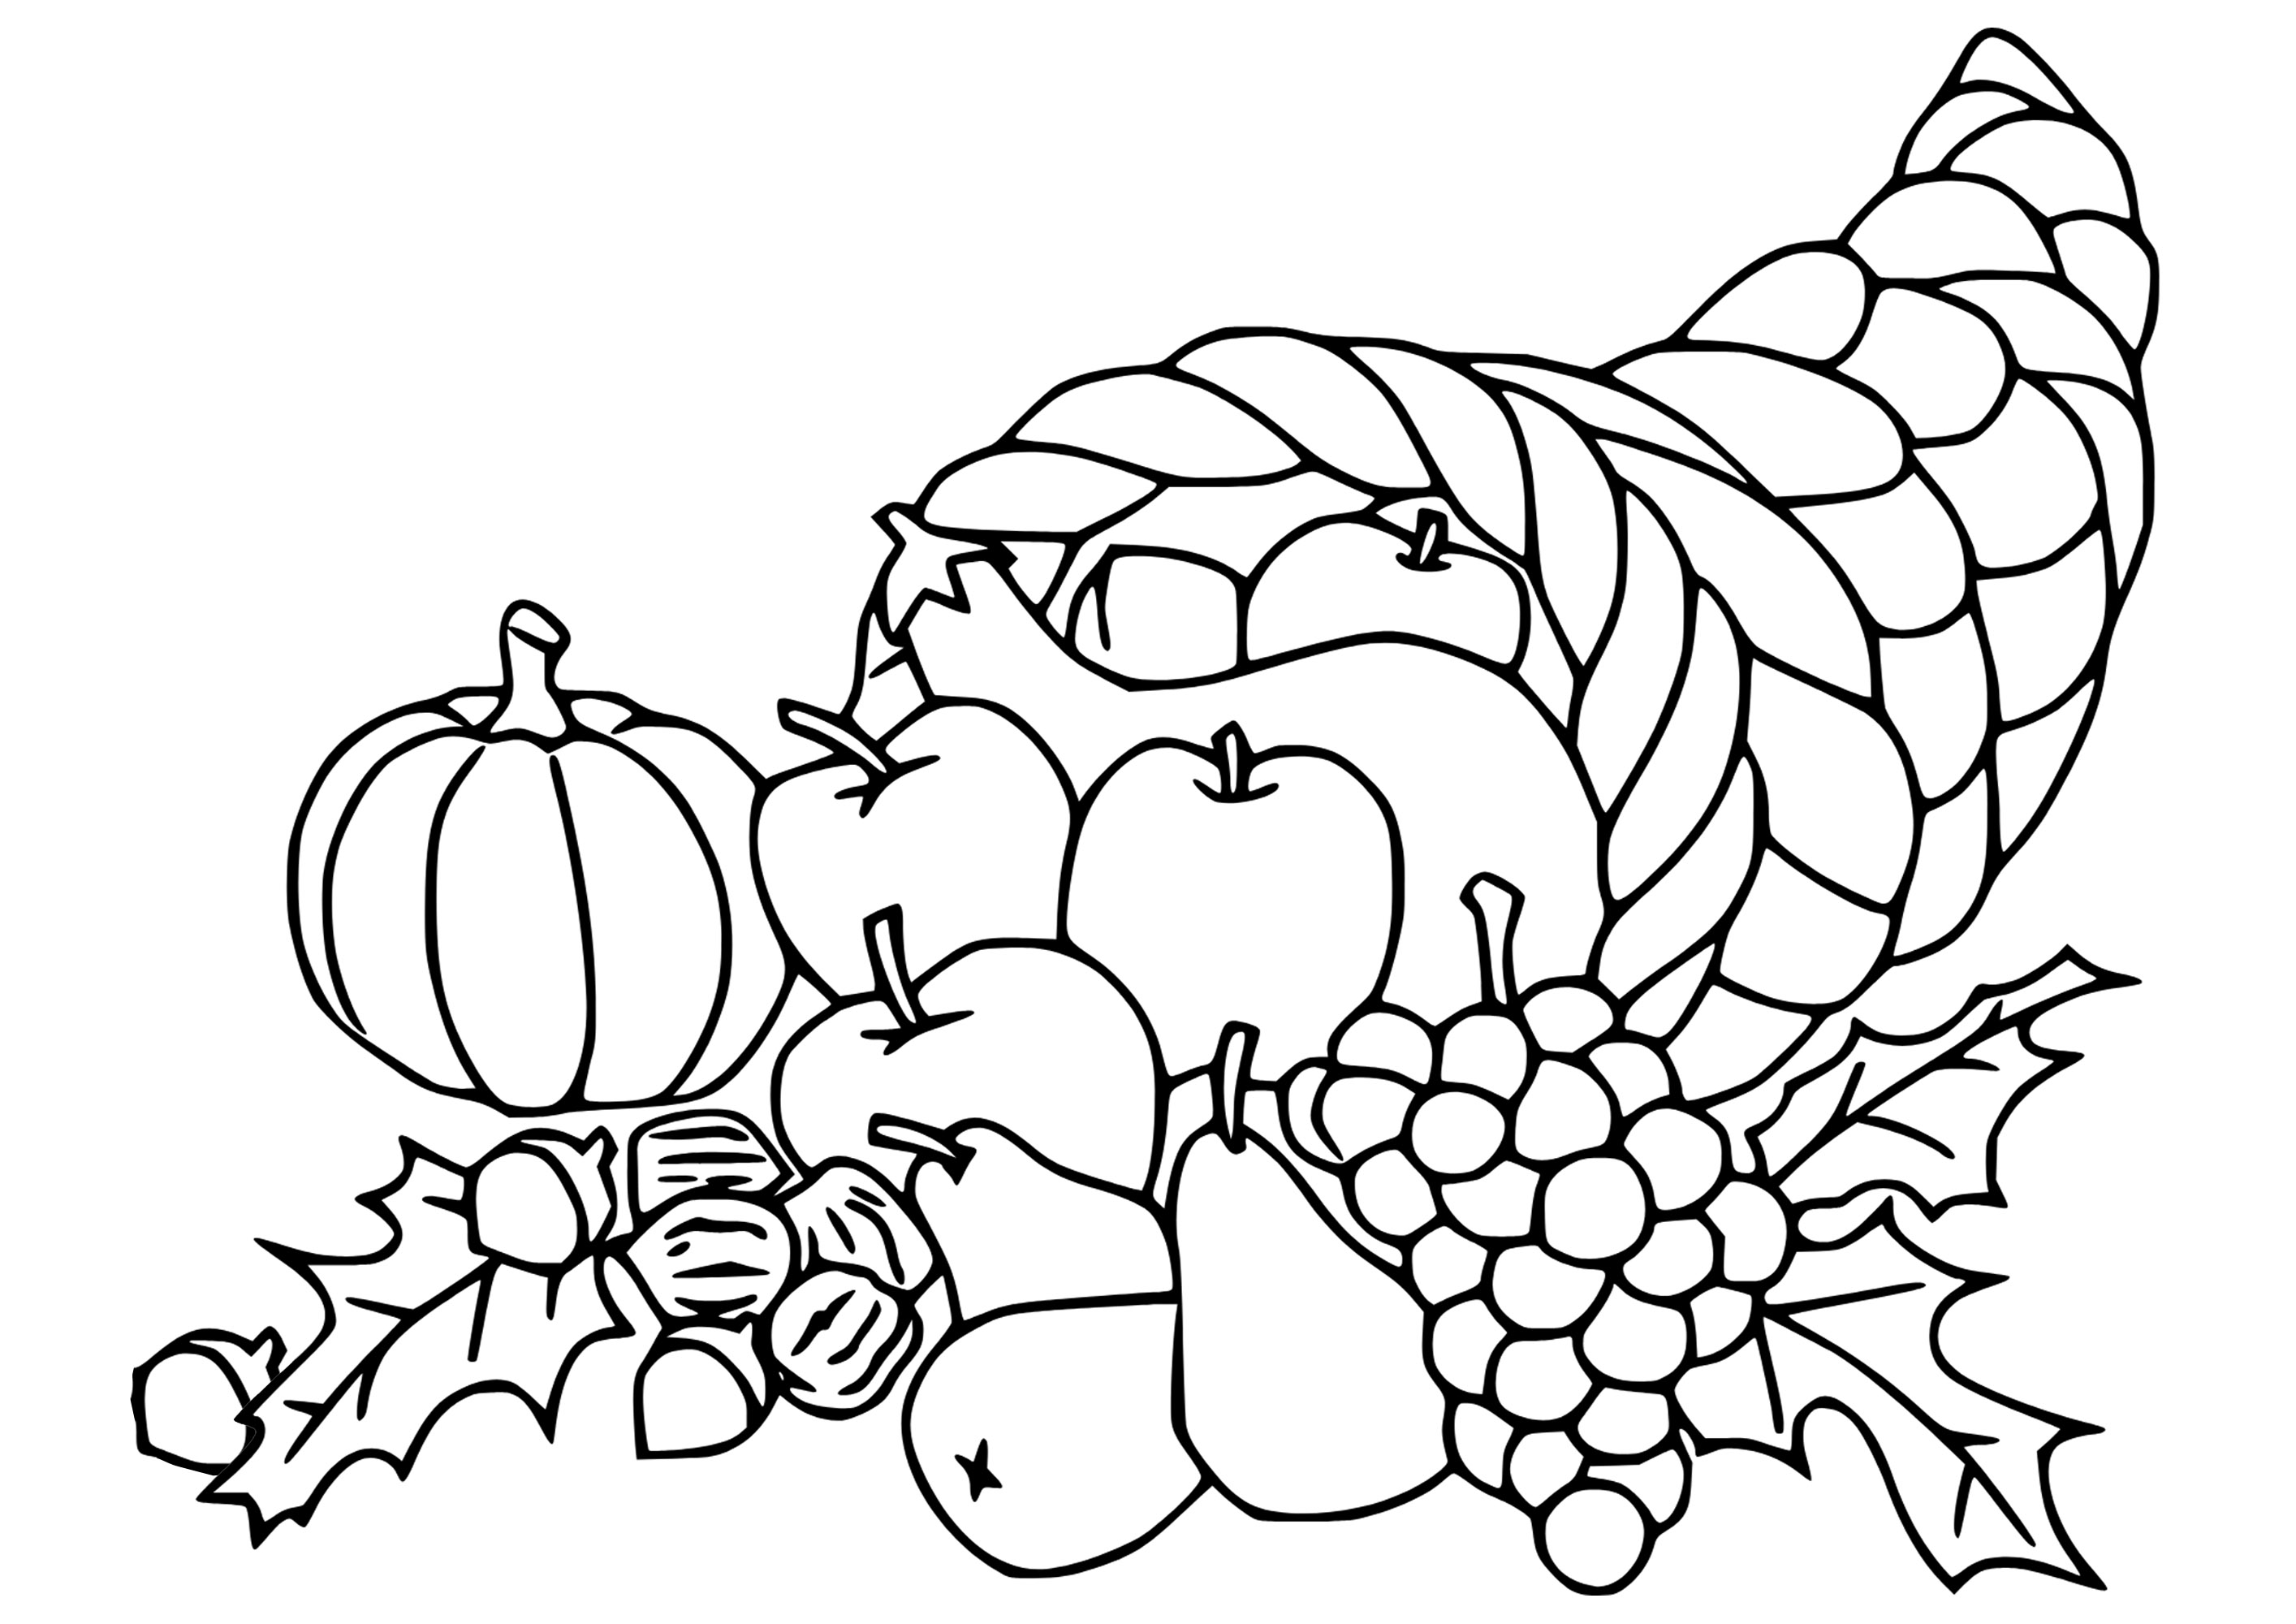 Corne d'abondance de la Thanksgiving. Quelques fruits et légumes dessinés simplement sortes de cette corne d'abondance